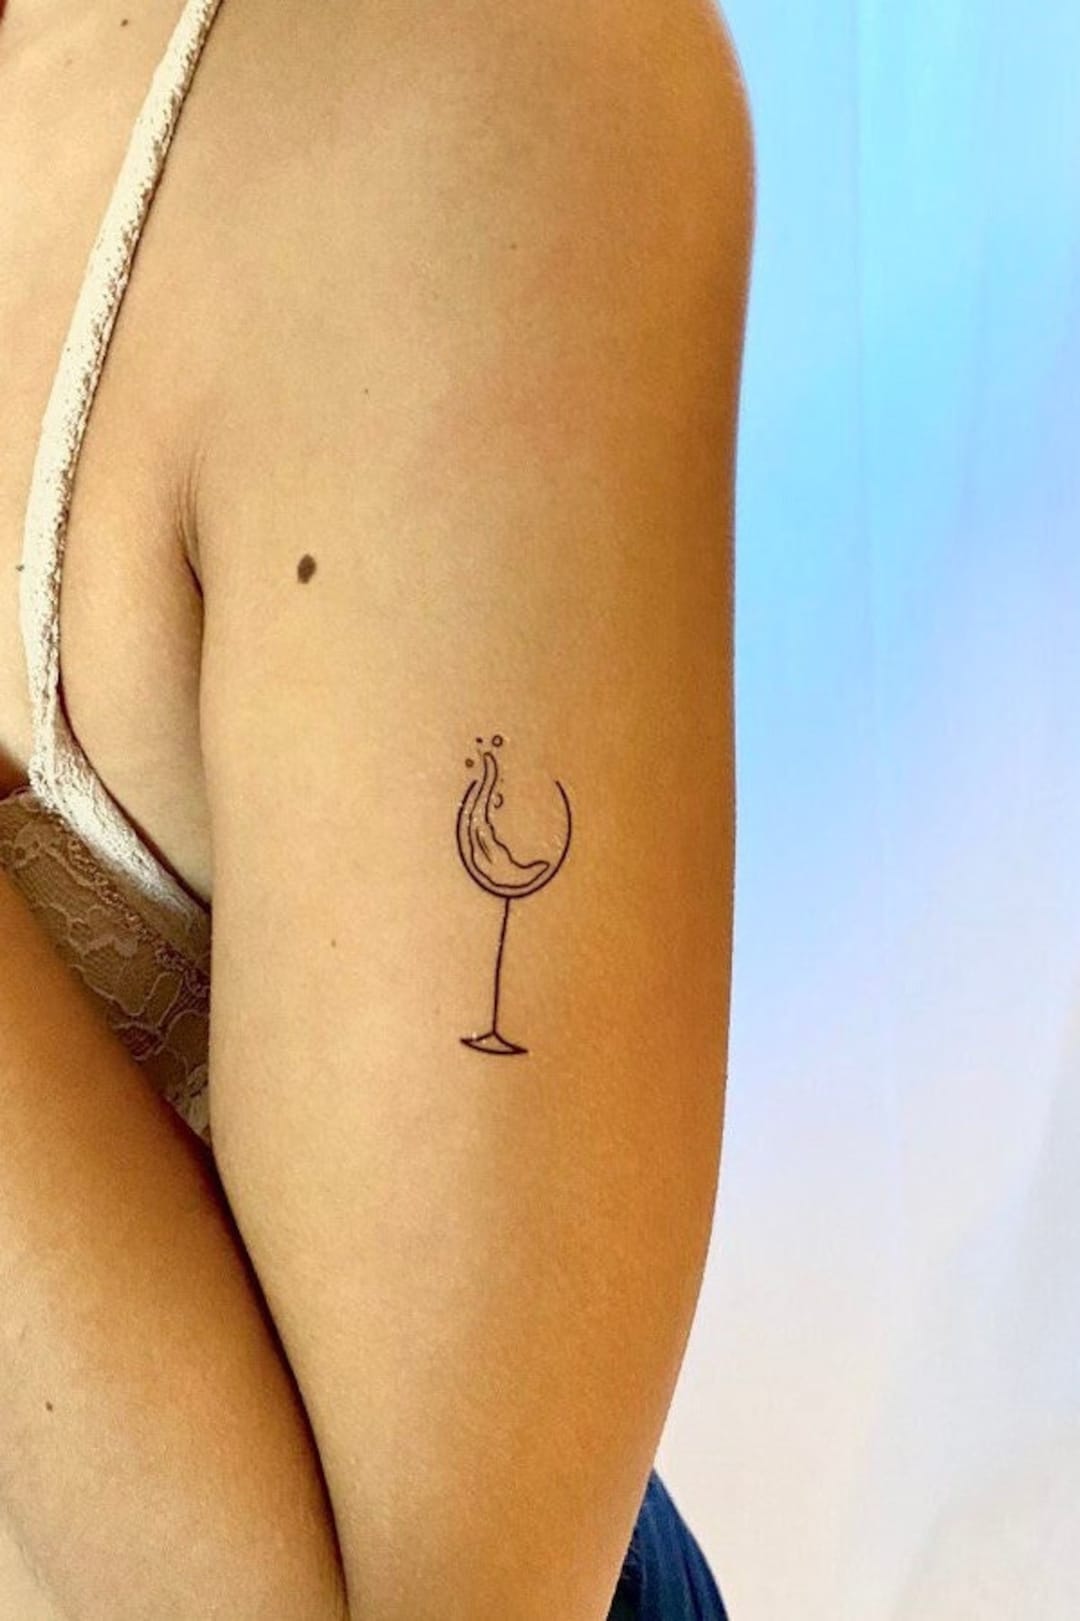 Minimalist wine glass tattoo for best friends